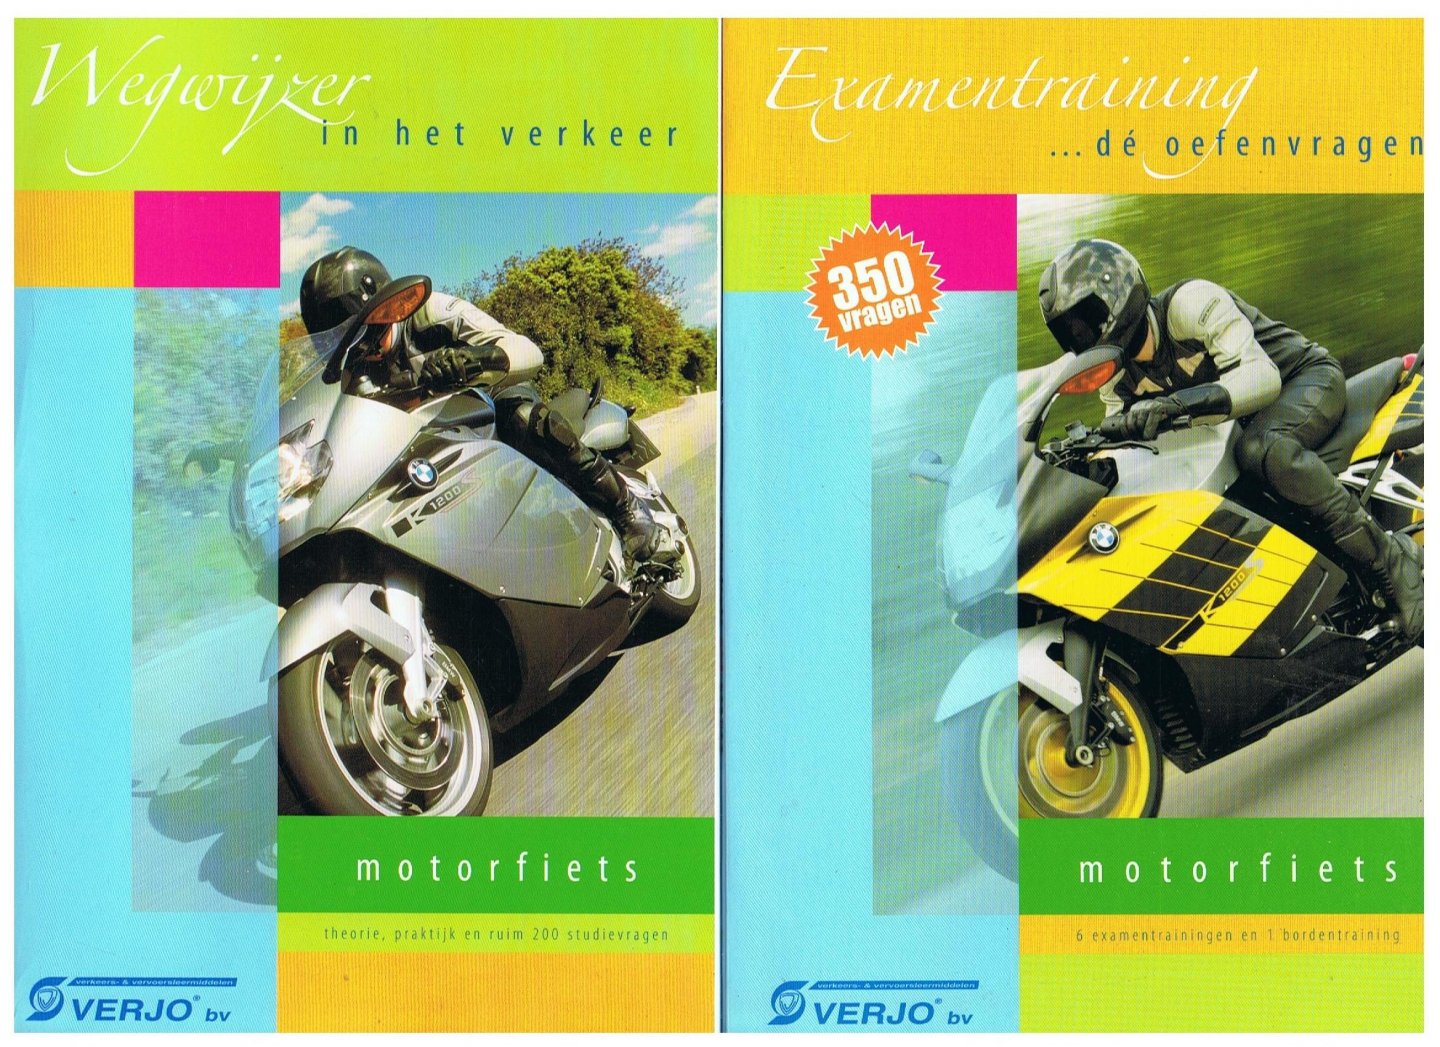 Redactiegroep Verjo bv - Wegwijzer in het verkeer en Examentraining oefenvragen Motorfiets